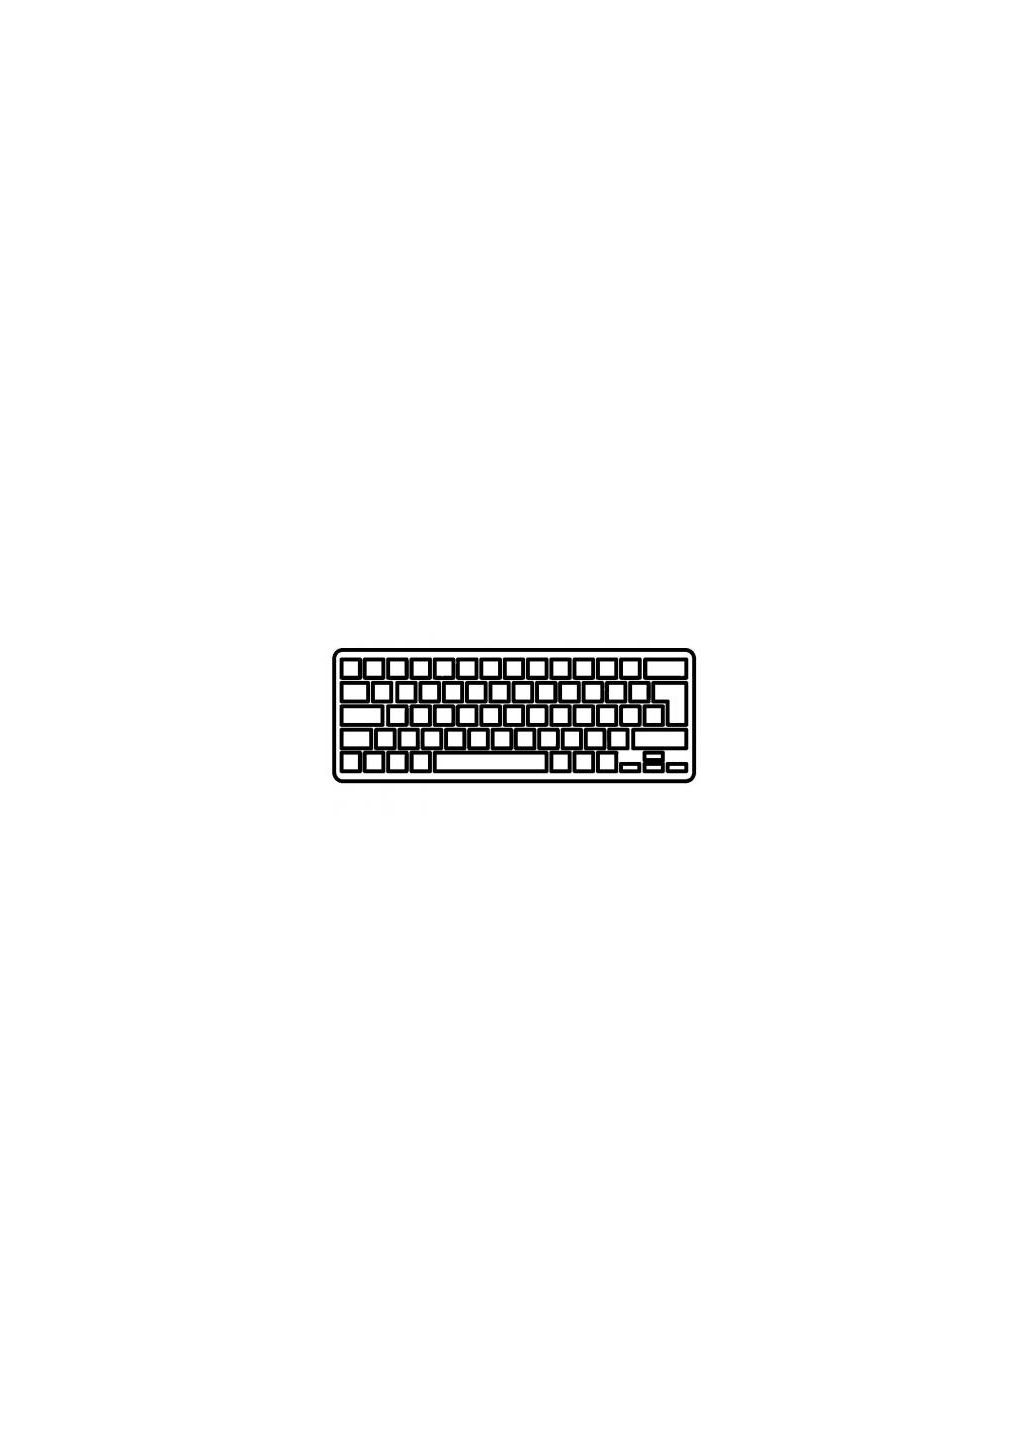 Клавиатура ноутбука (A43243) Acer aspire 7520 серая ua (276707561)